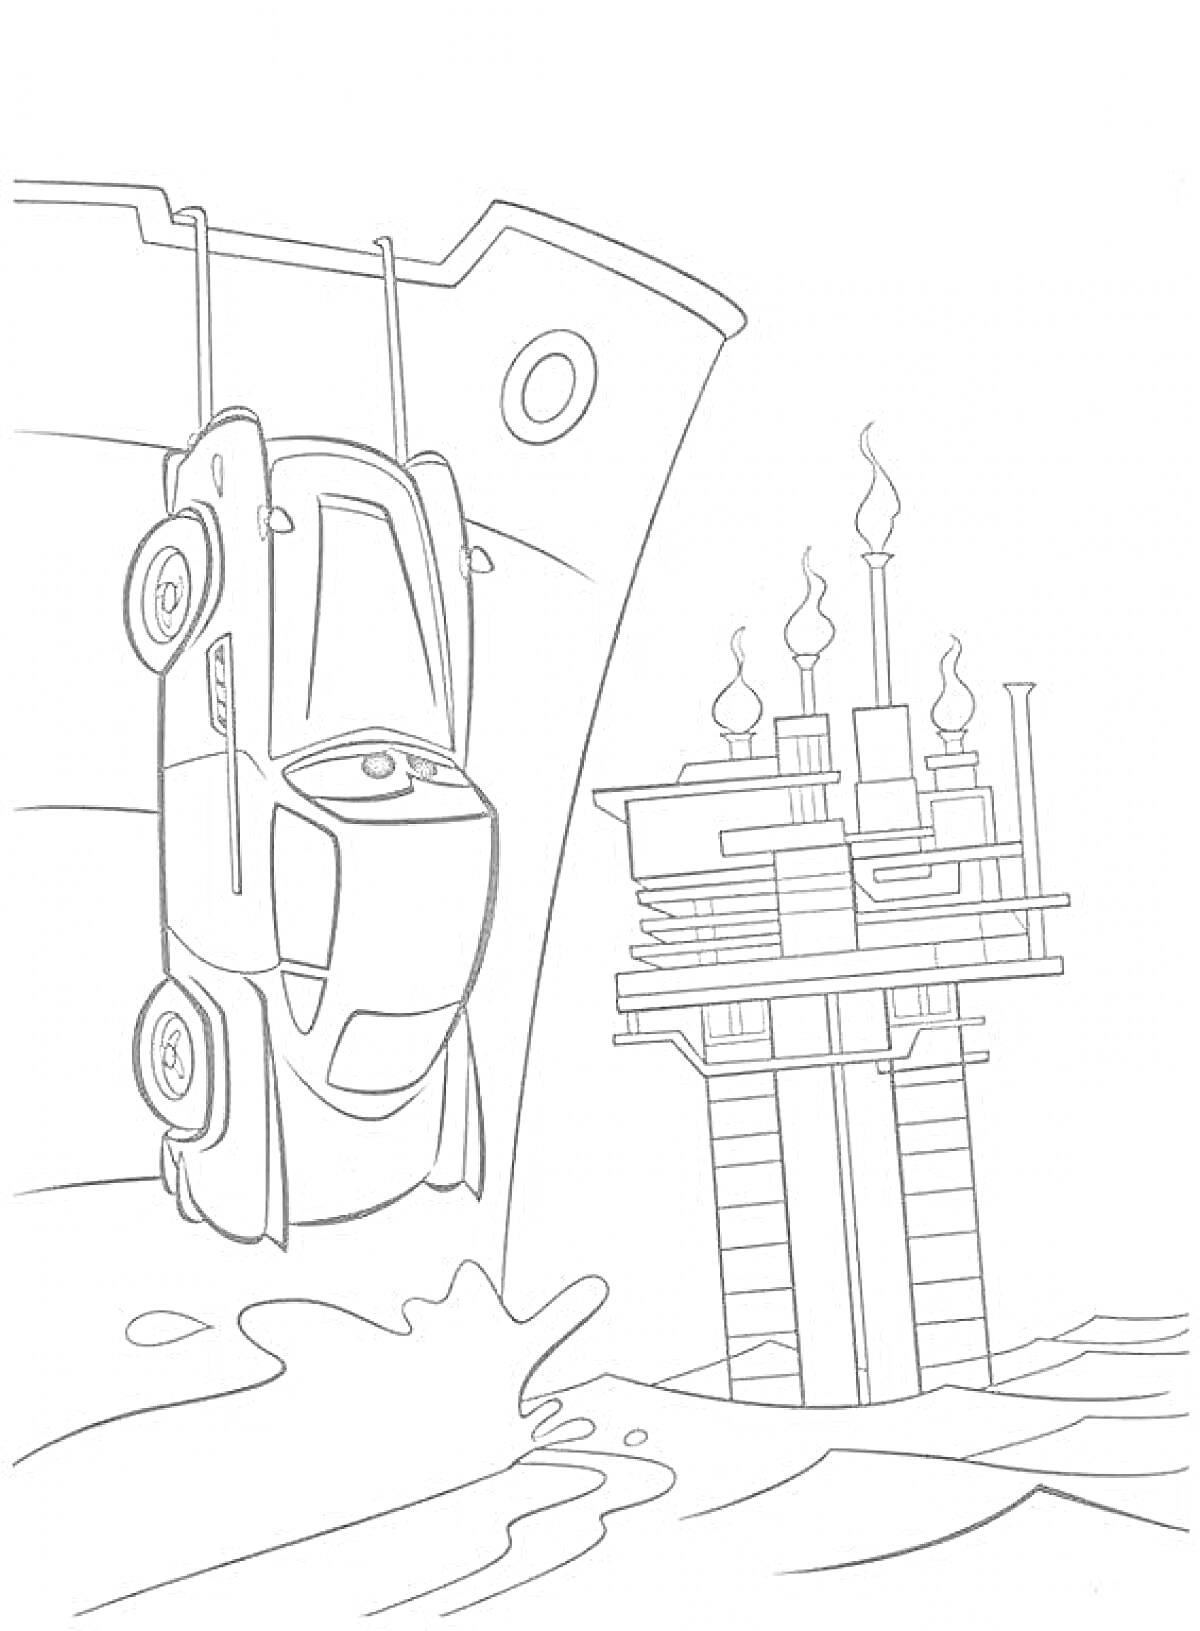 Автомобиль Финн МакМисл, висящий на крюке возле нефтяной платформы